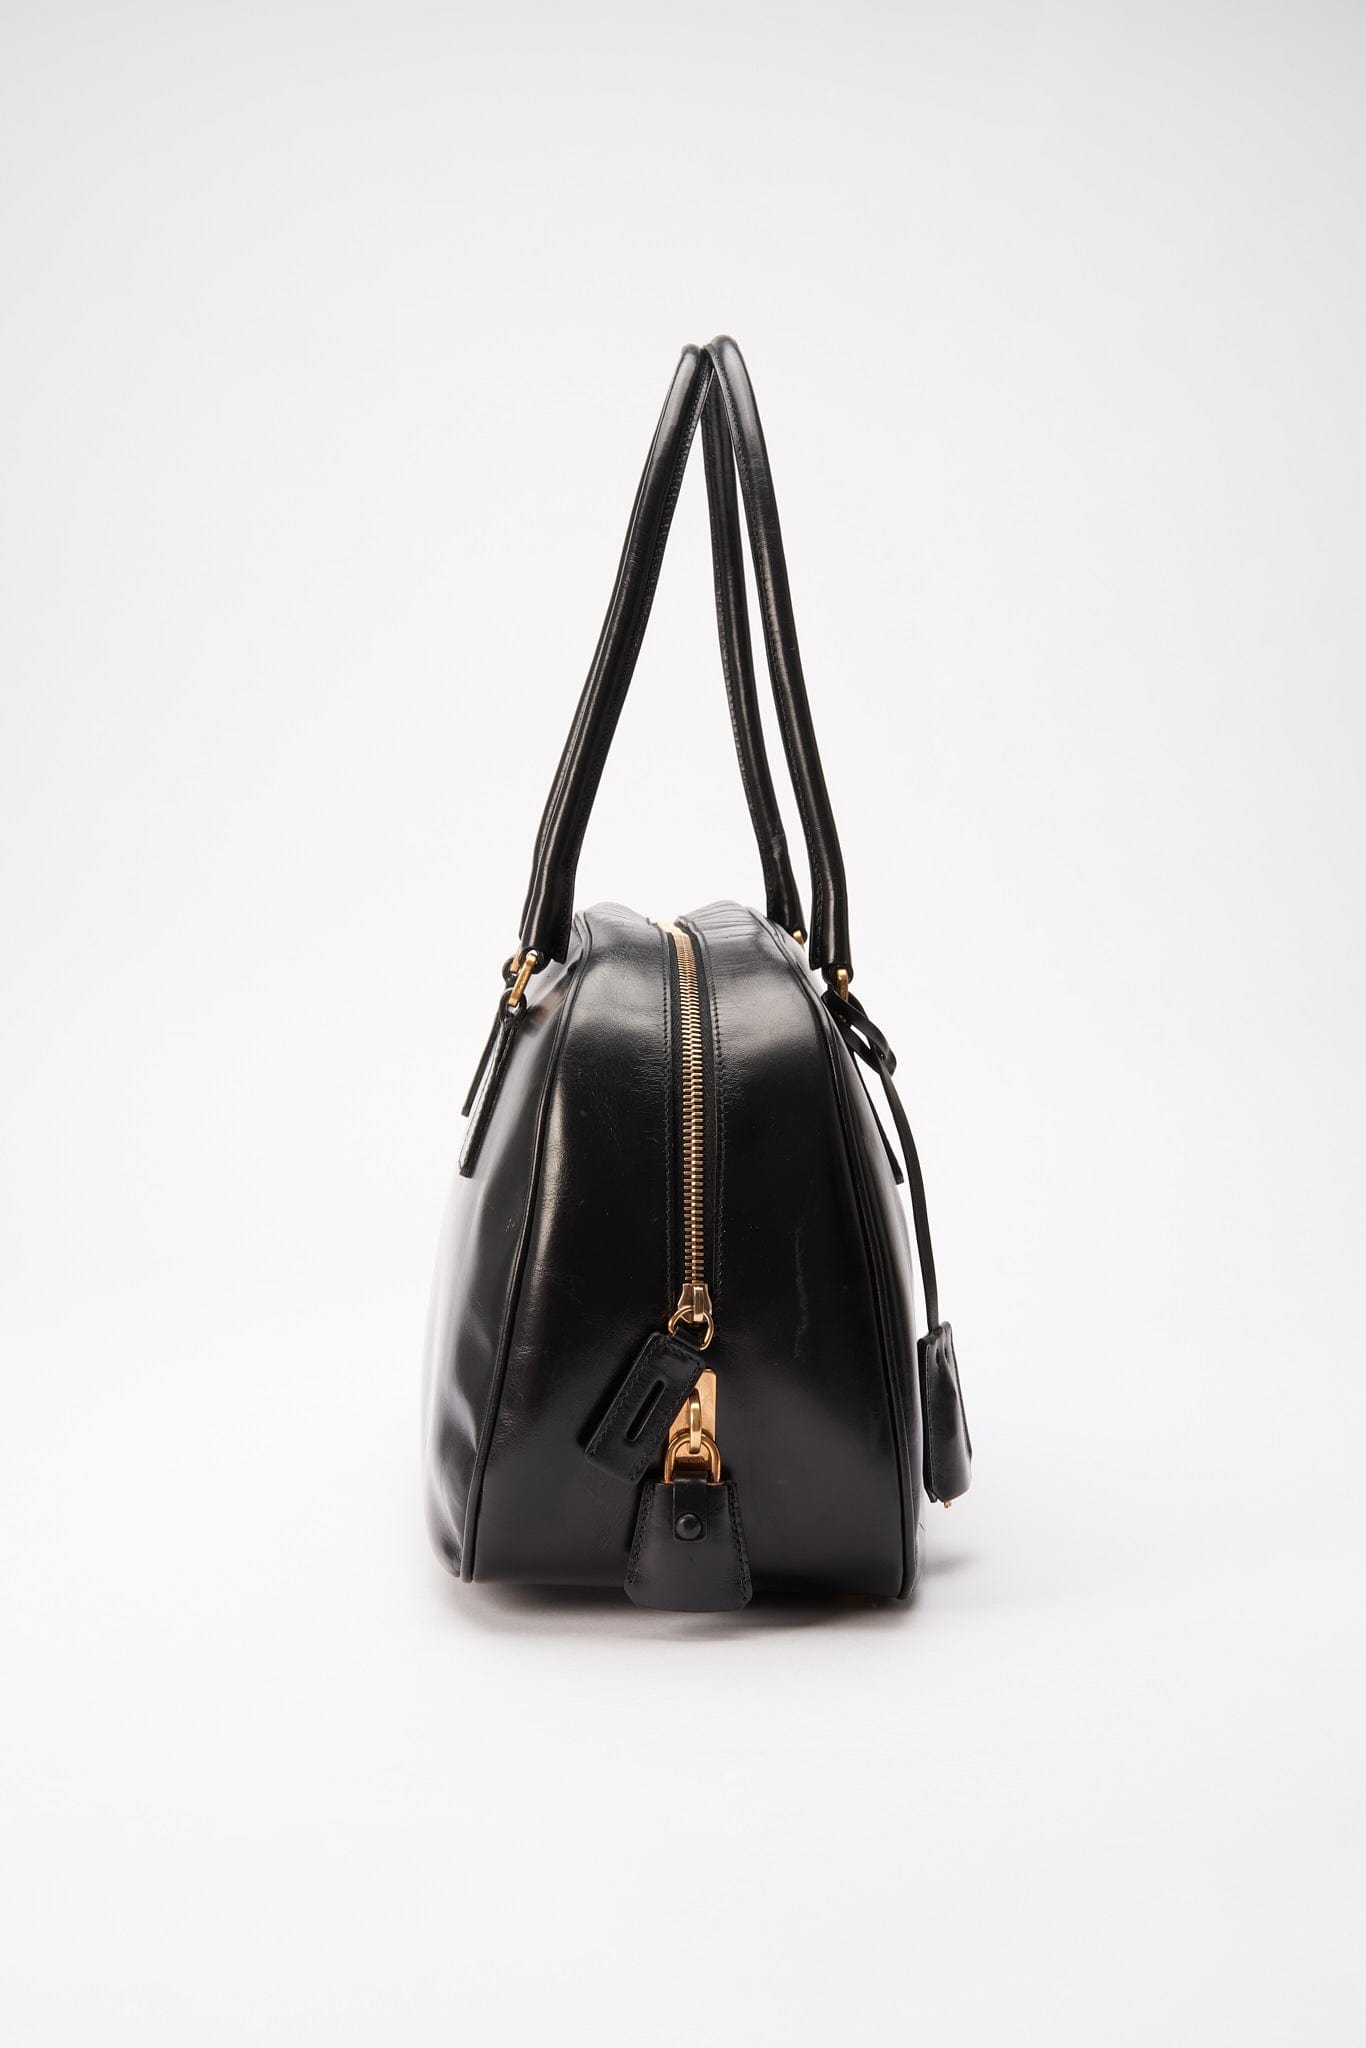 A vintage 90's Prada Black Leather Shoulder Bag